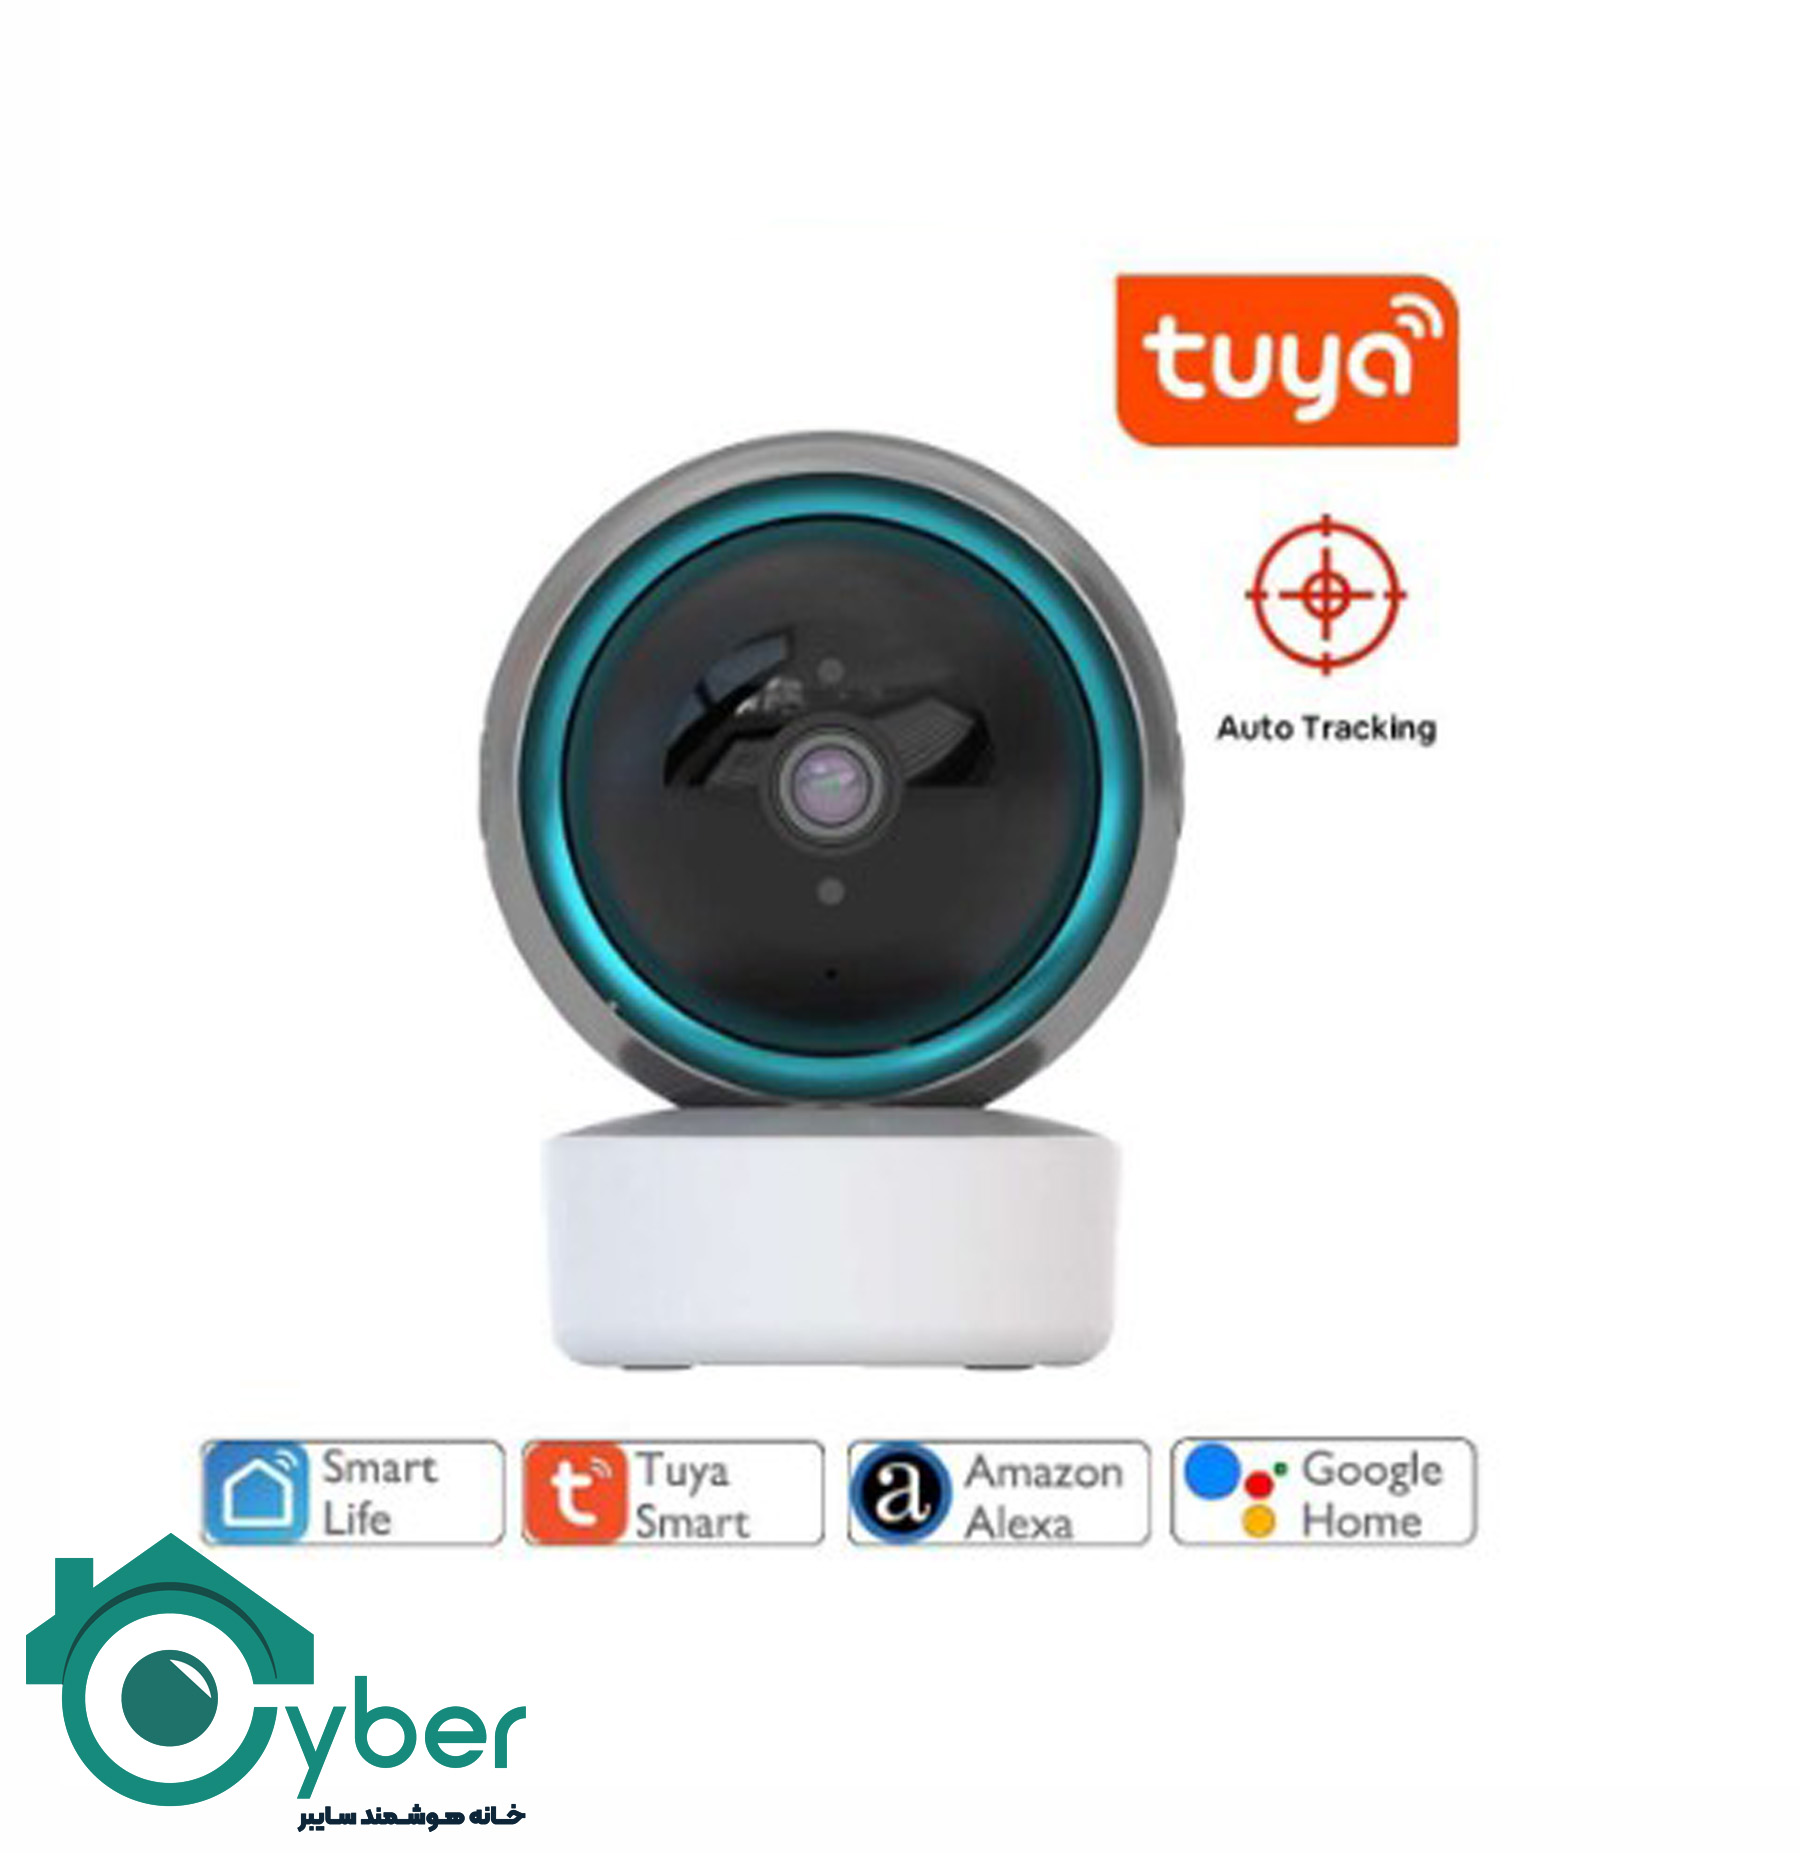 دوربین چرخشی وای فای 5MP تویا -  Tuya smart